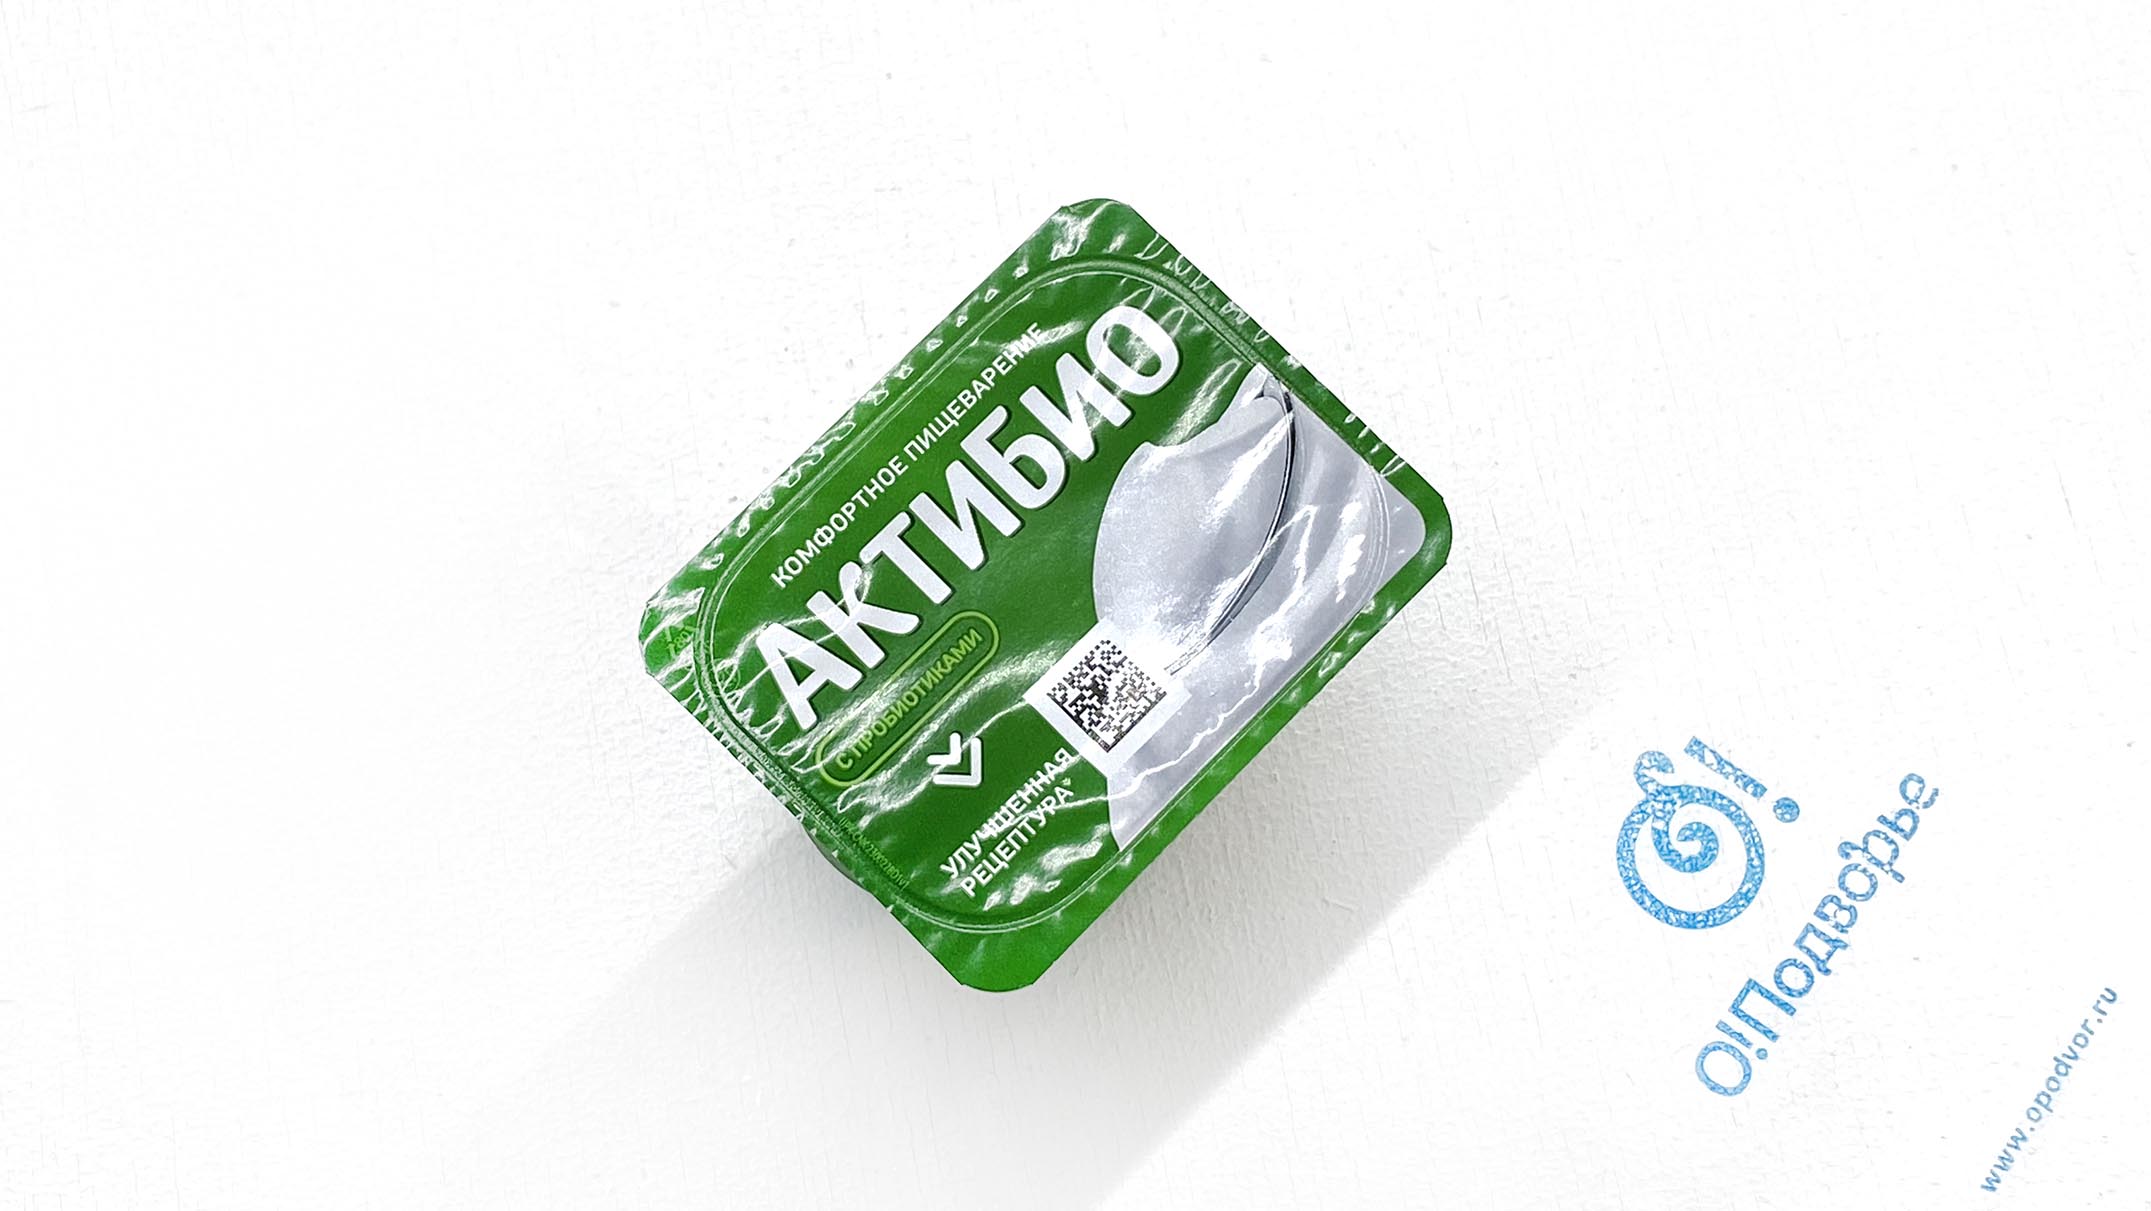 "Актибио", йогурт, обогащенный бифидобактериями B. LACTIS, 3,5%, АО "Эйч энд Эн", 130 грамм, (Зл)